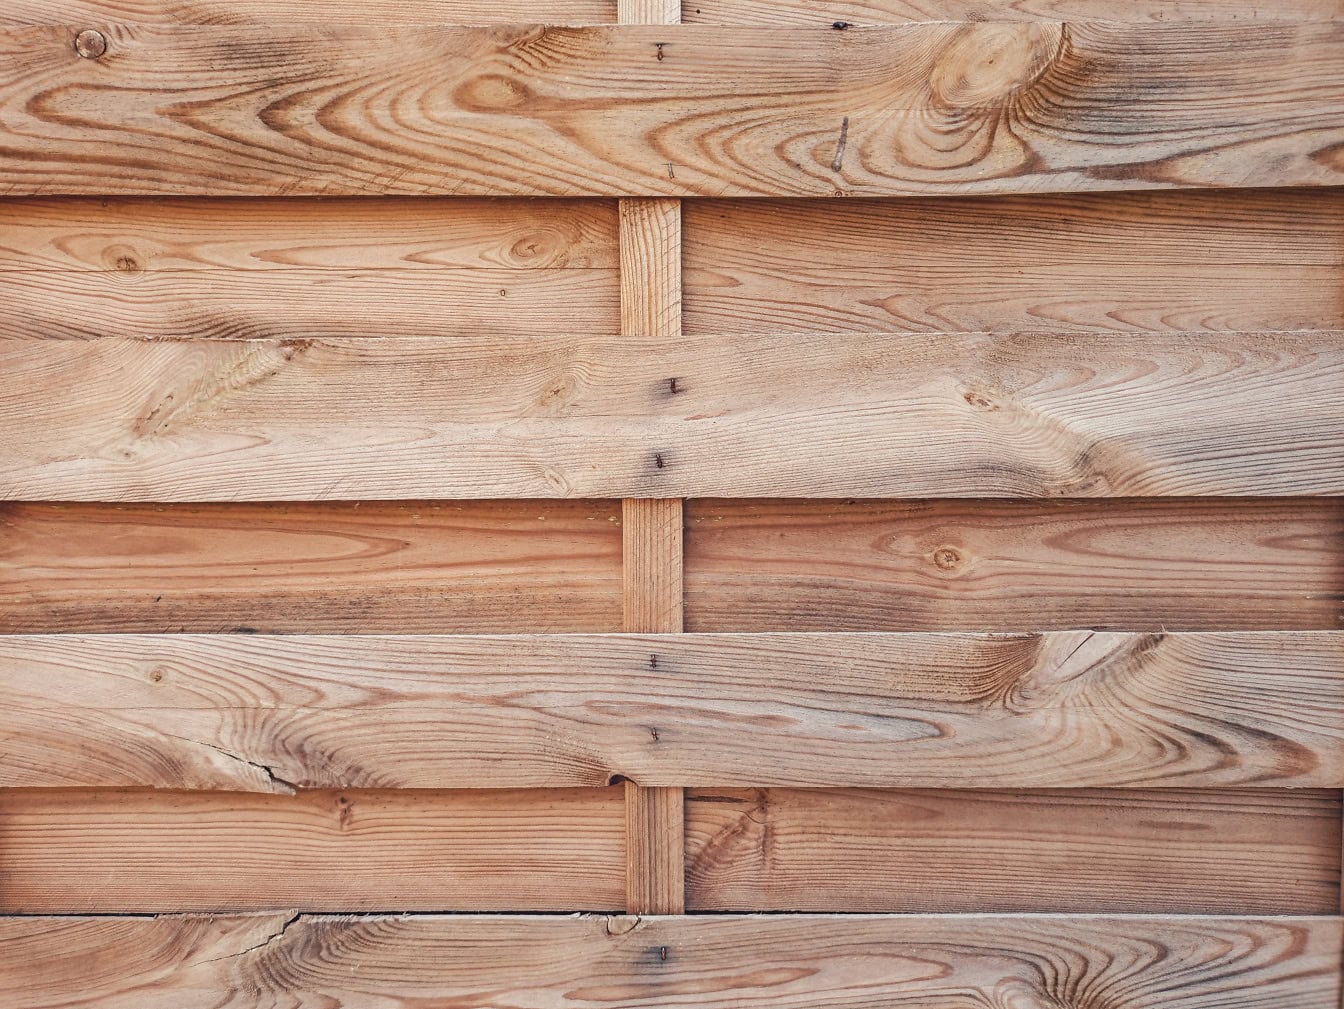 Textura de una tabla de madera hecha de listones delgados de madera dura apilados horizontalmente con nudos en tablones